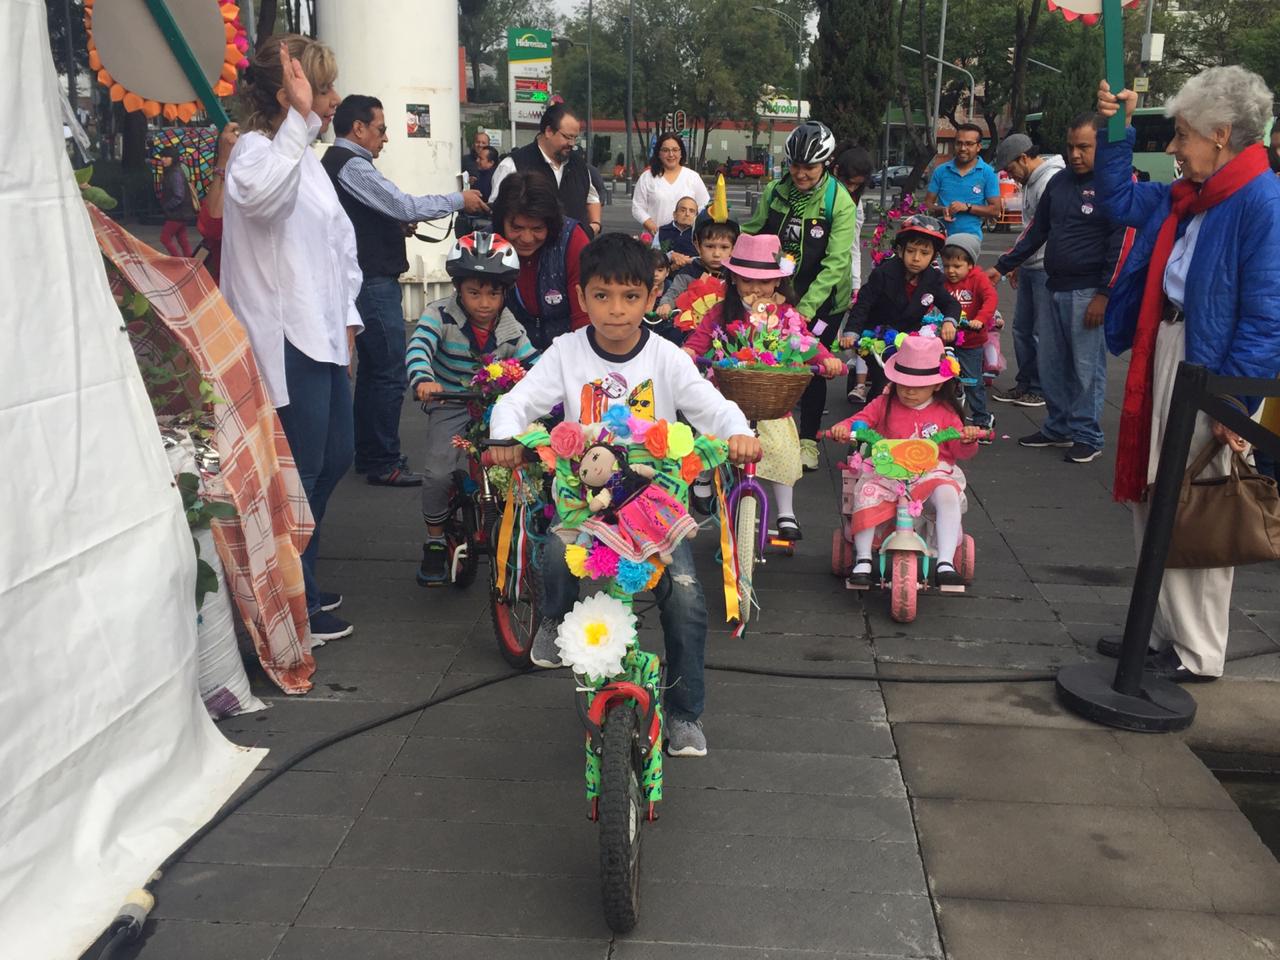 Rodada Floral y concurso de Bicicletas Floridas engalanan a la Feria de las Flores de San Ángel